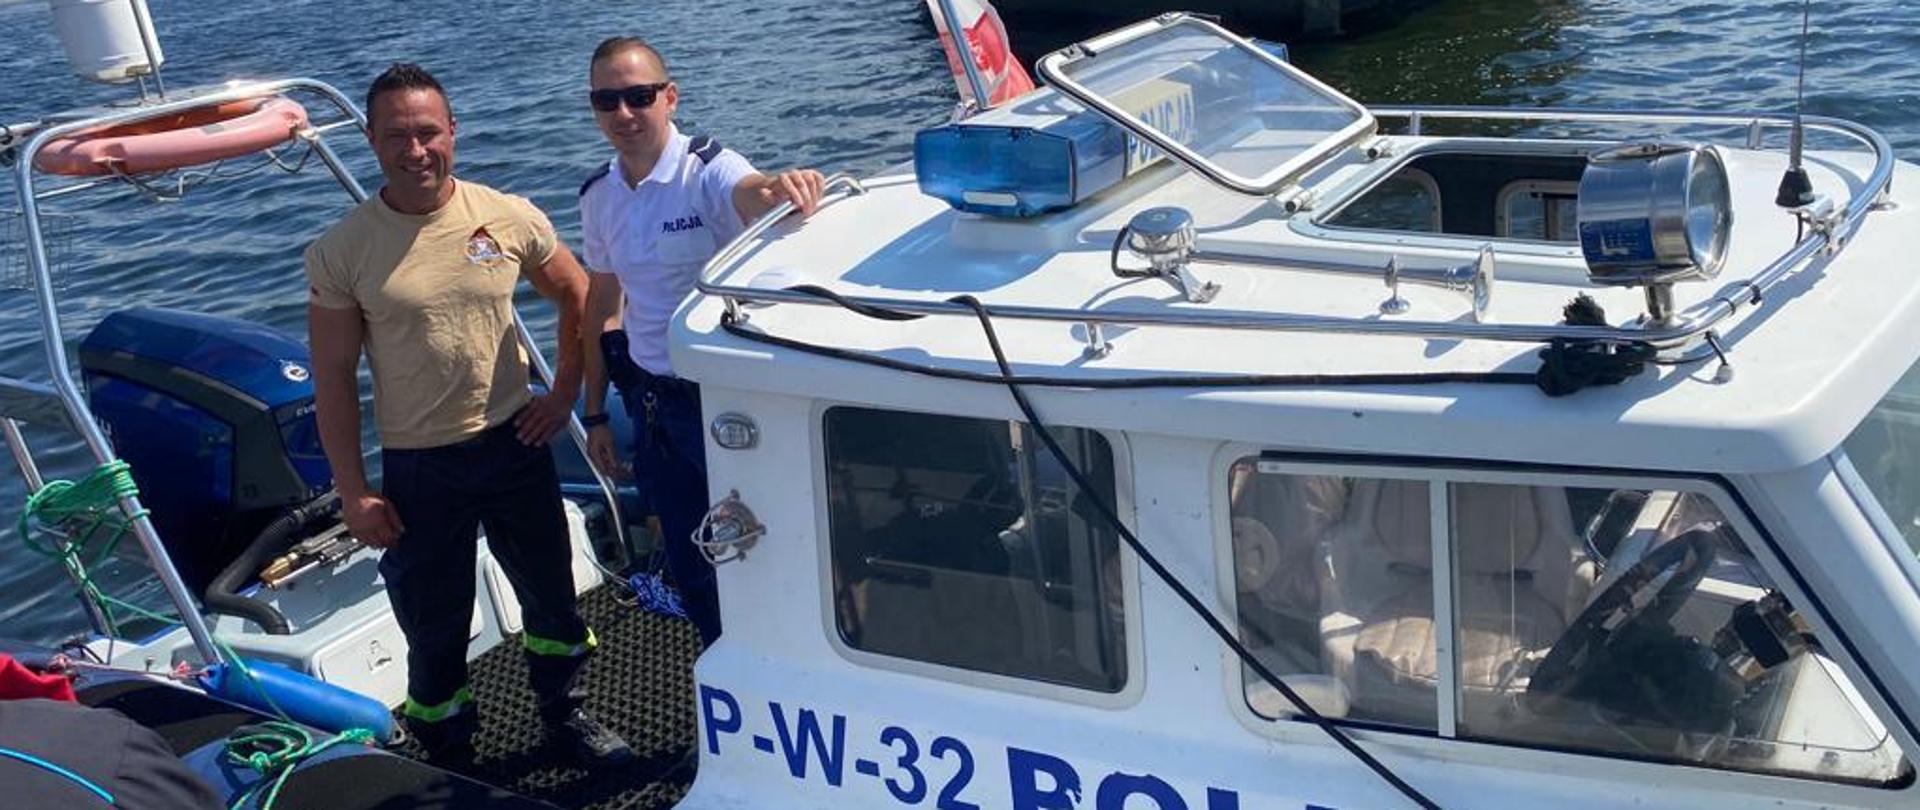 Na zdjęciu widoczna niebiesko-biała prawa burta łodzi z napisem P W 32 POLICJA. Na łodzi stoi dwóch uśmiechniętych mężczyzn. Pierwszy z lewej w piaskowej koszulce i ciemnych spodniach z jasnozieloną taśmą pod kolanami i czarnych butach, drugi w okularach, białej koszulce z napisem na piersi POLICJA i ciemnych spodniach, trzyma rękę na relingu dachu. W tle otwarta woda zalewu, w oddali ledwie widoczna zieleń drzew i błękitne niebo z białymi obłokami. Tuż za łodzią kadłub betonowca.